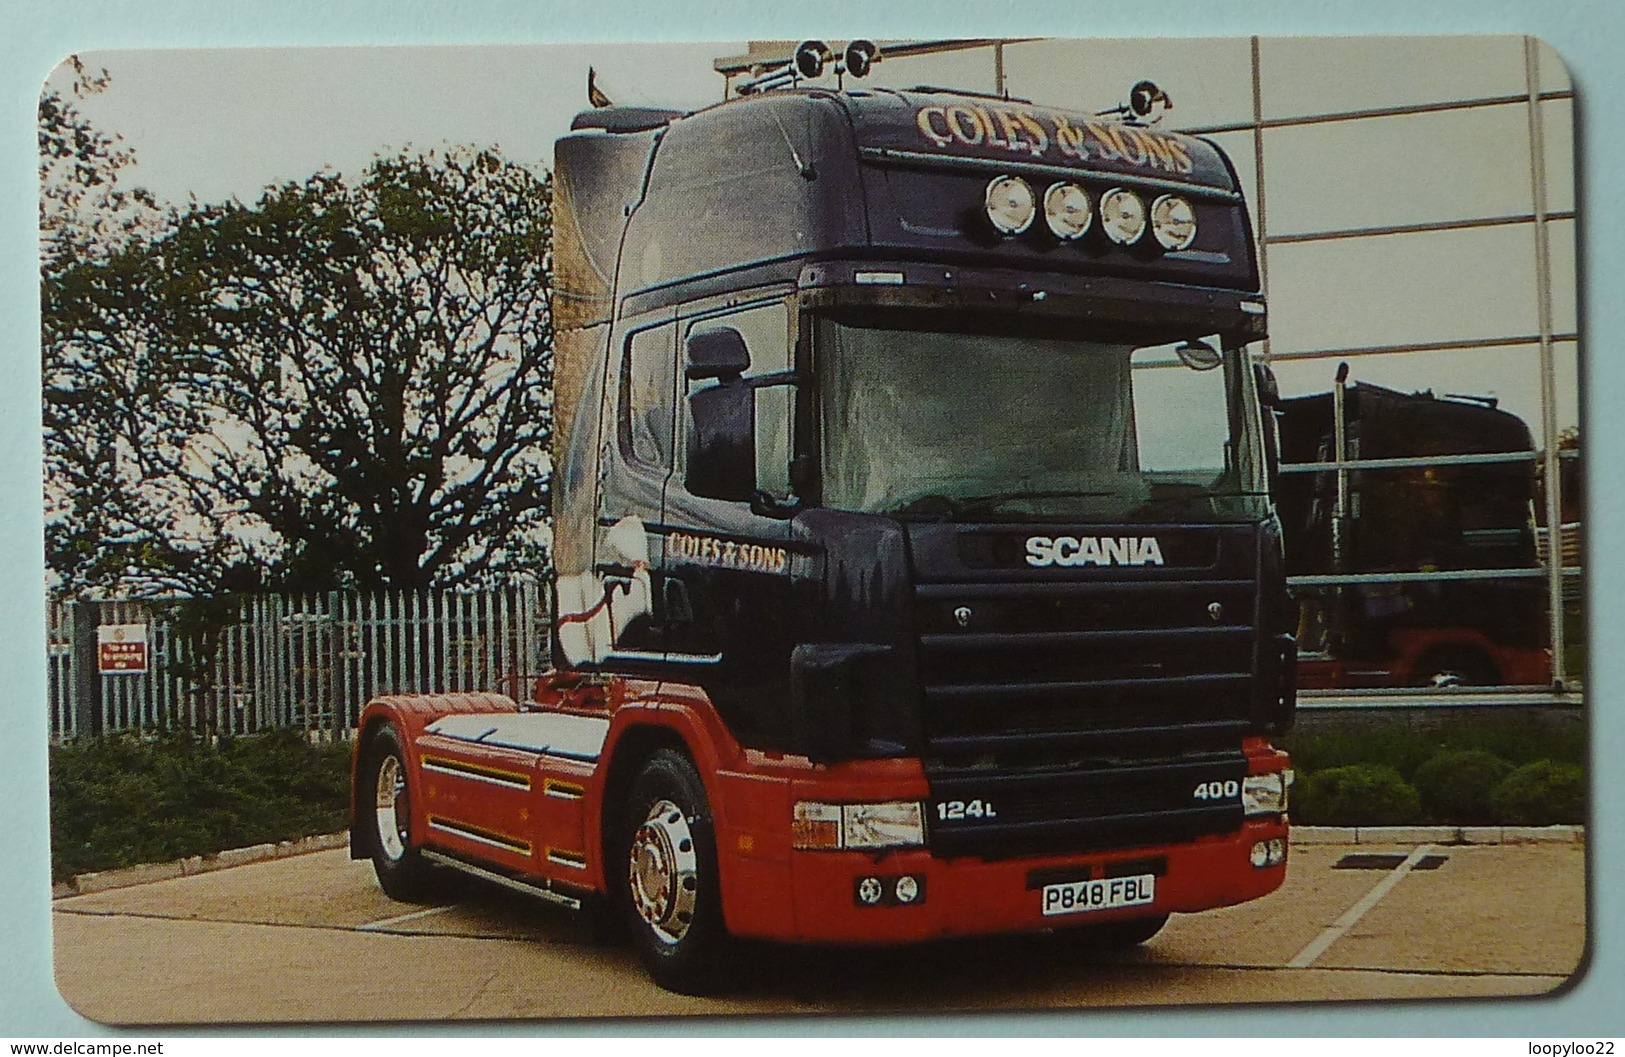 United Kingdom - BT - Chip - PRO261 - Super Trucks No 1 - Coles & Sons - 1000ex - Mint - BT Promotie